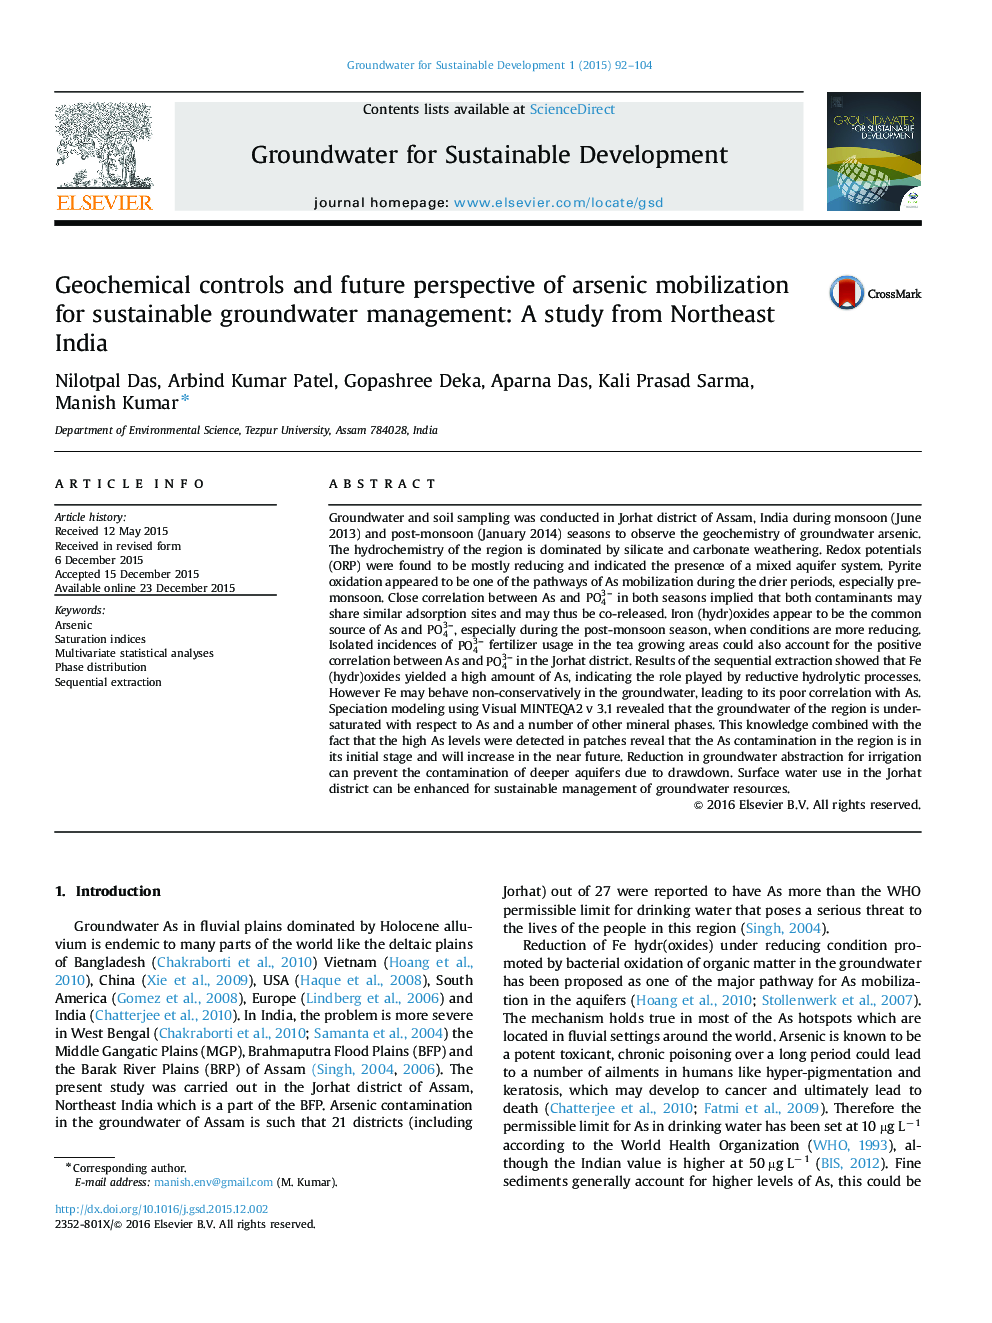 کنترل ژئوشیمیایی و چشم انداز آیندۀ بسیج آرسنیک برای مدیریت پایدار آب های زیرزمینی: یک مطالعه از شمال شرقی هند 